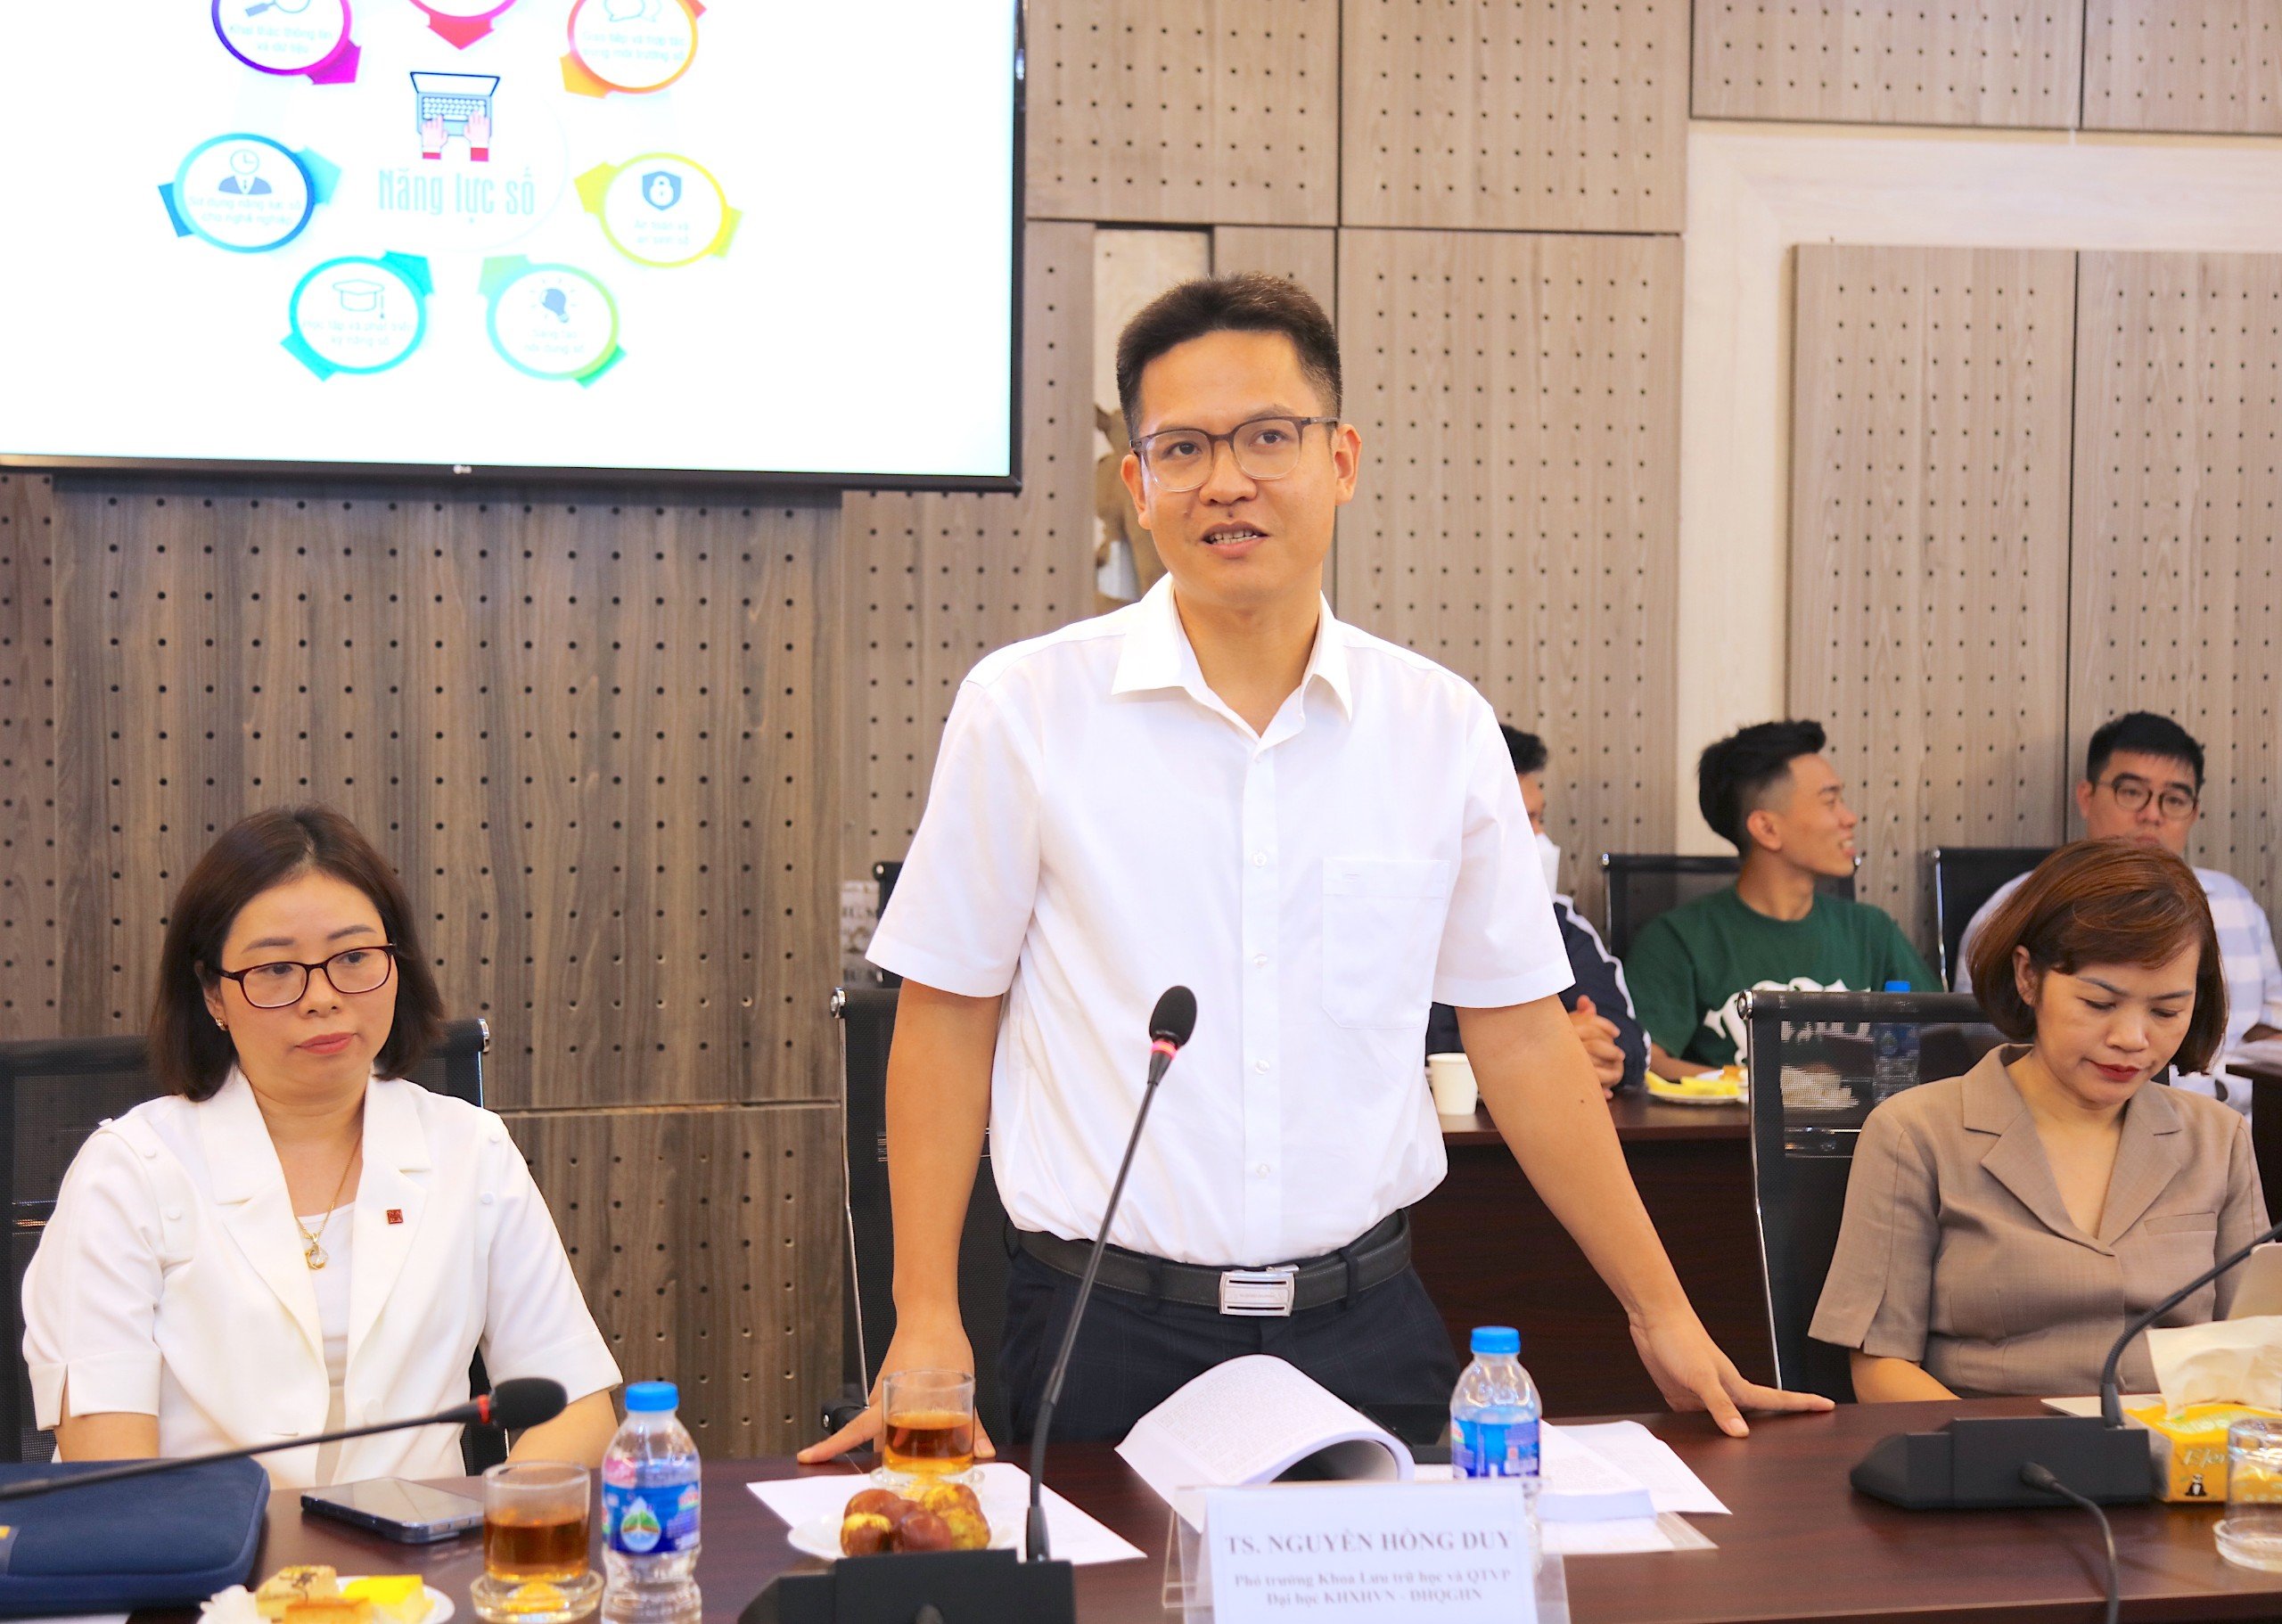 TS. Nguyễn Hồng Duy, Phó trưởng khoa Khoa Lưu trữ học và Quản trị văn phòng, Trường Đại học Khoa học xã hội và Nhân văn tham luận tại Hội thảo.